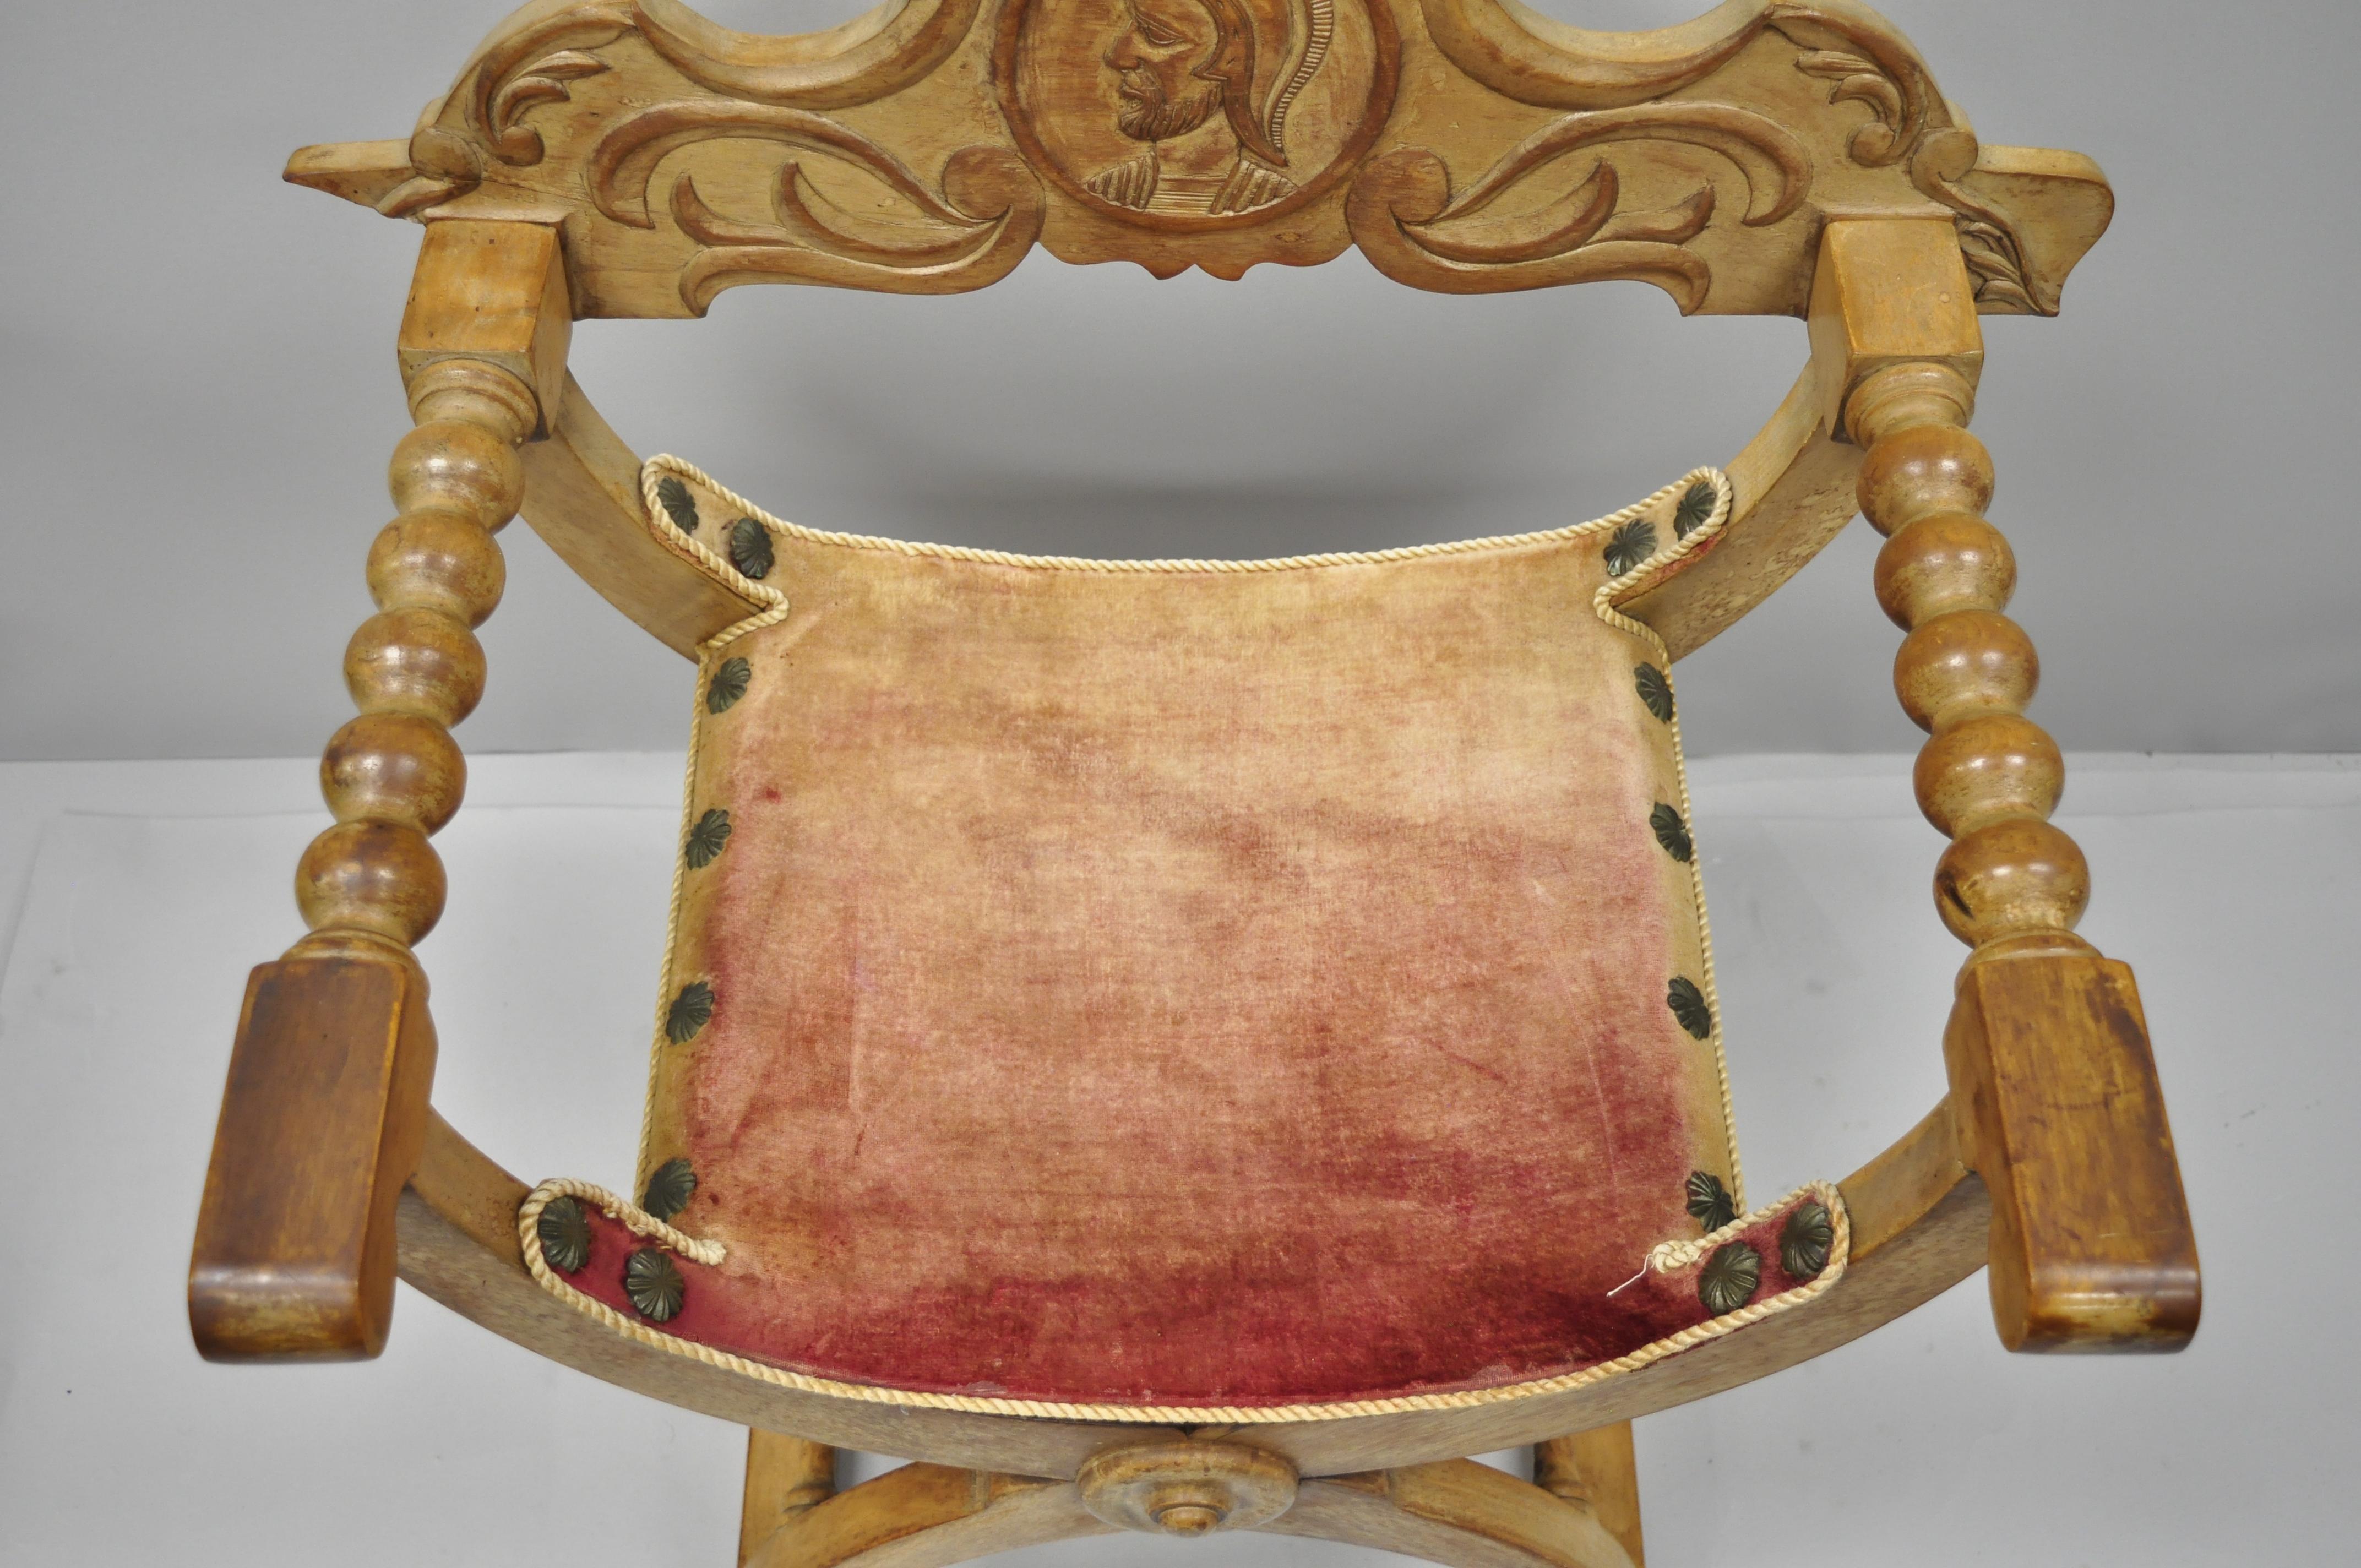 European Antique Spanish Renaissance Curule Savonarola Throne Chair Armchair